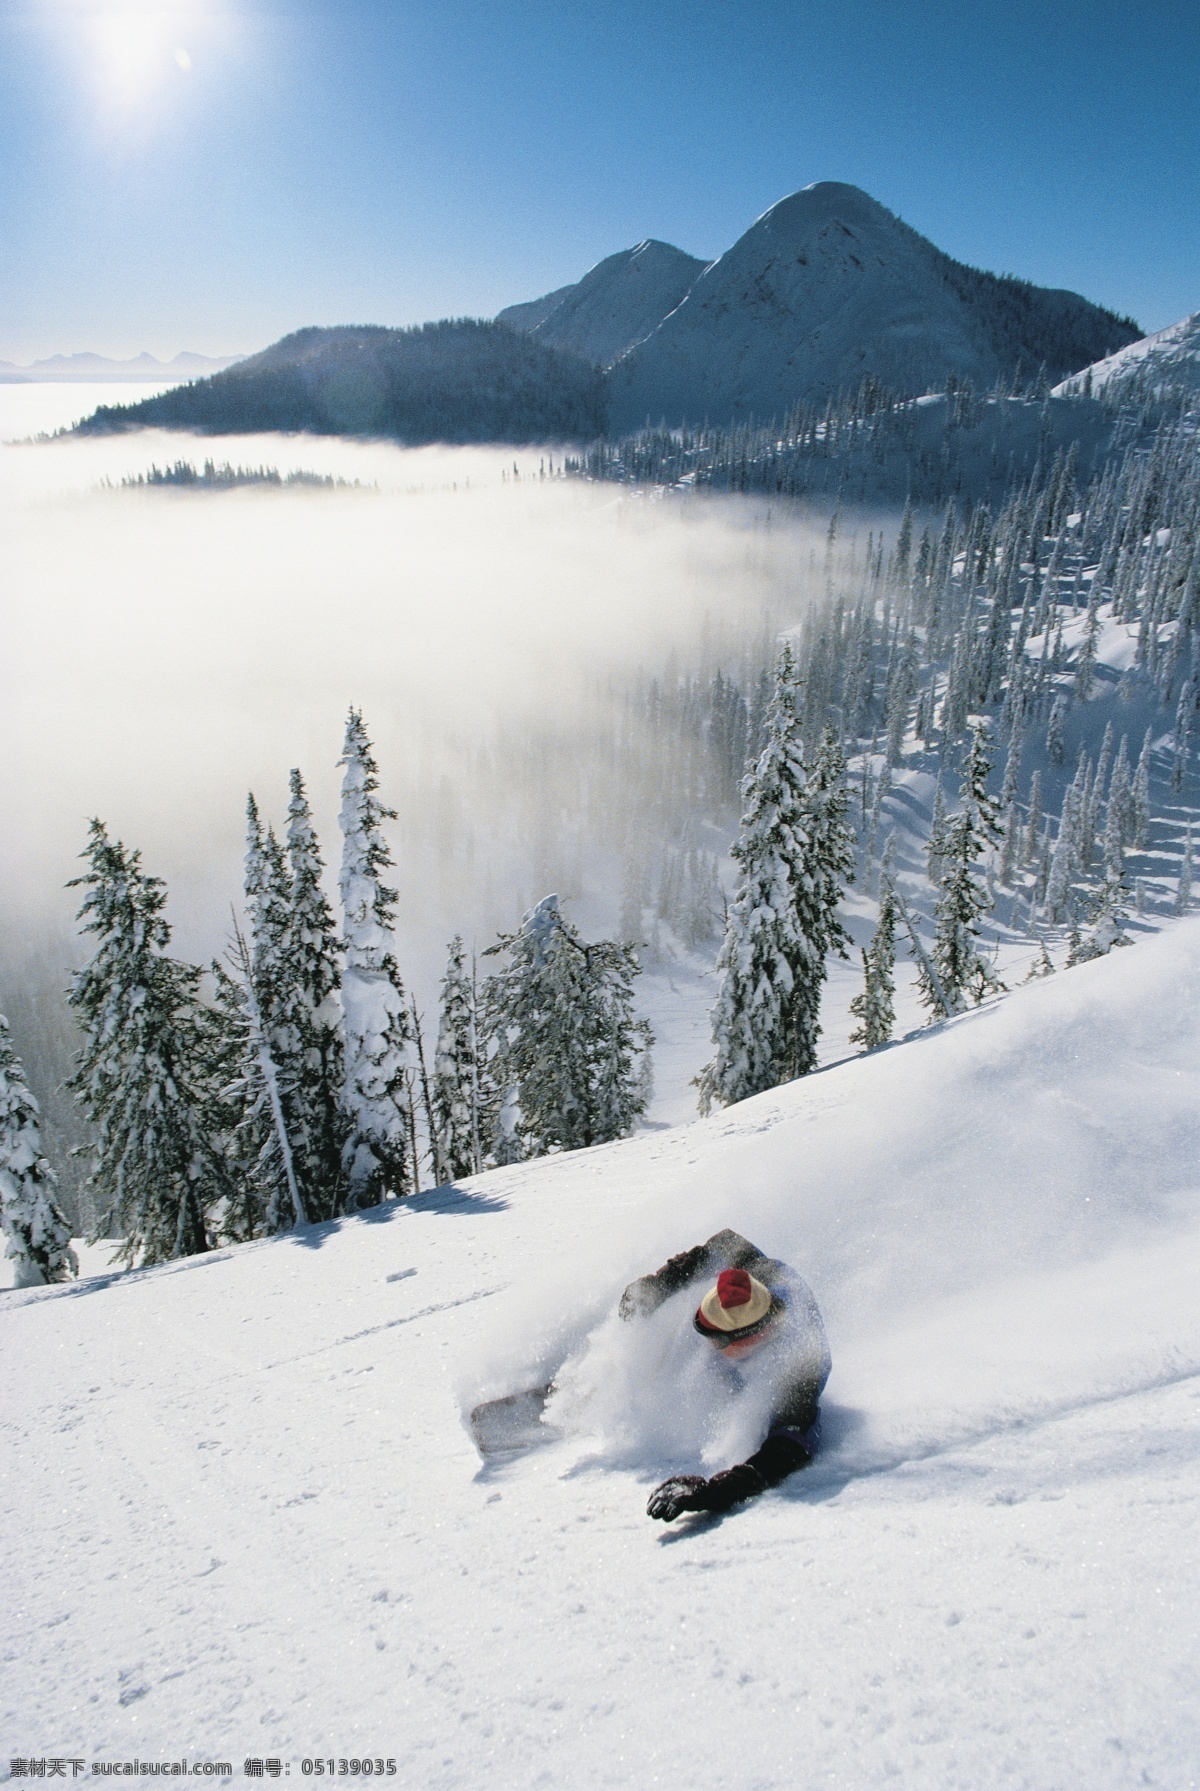 飞速 下滑 滑雪 运动员 雪地运动 划雪运动 极限运动 体育项目 速度 运动图片 生活百科 雪山 风景 摄影图片 高清图片 滑雪图片